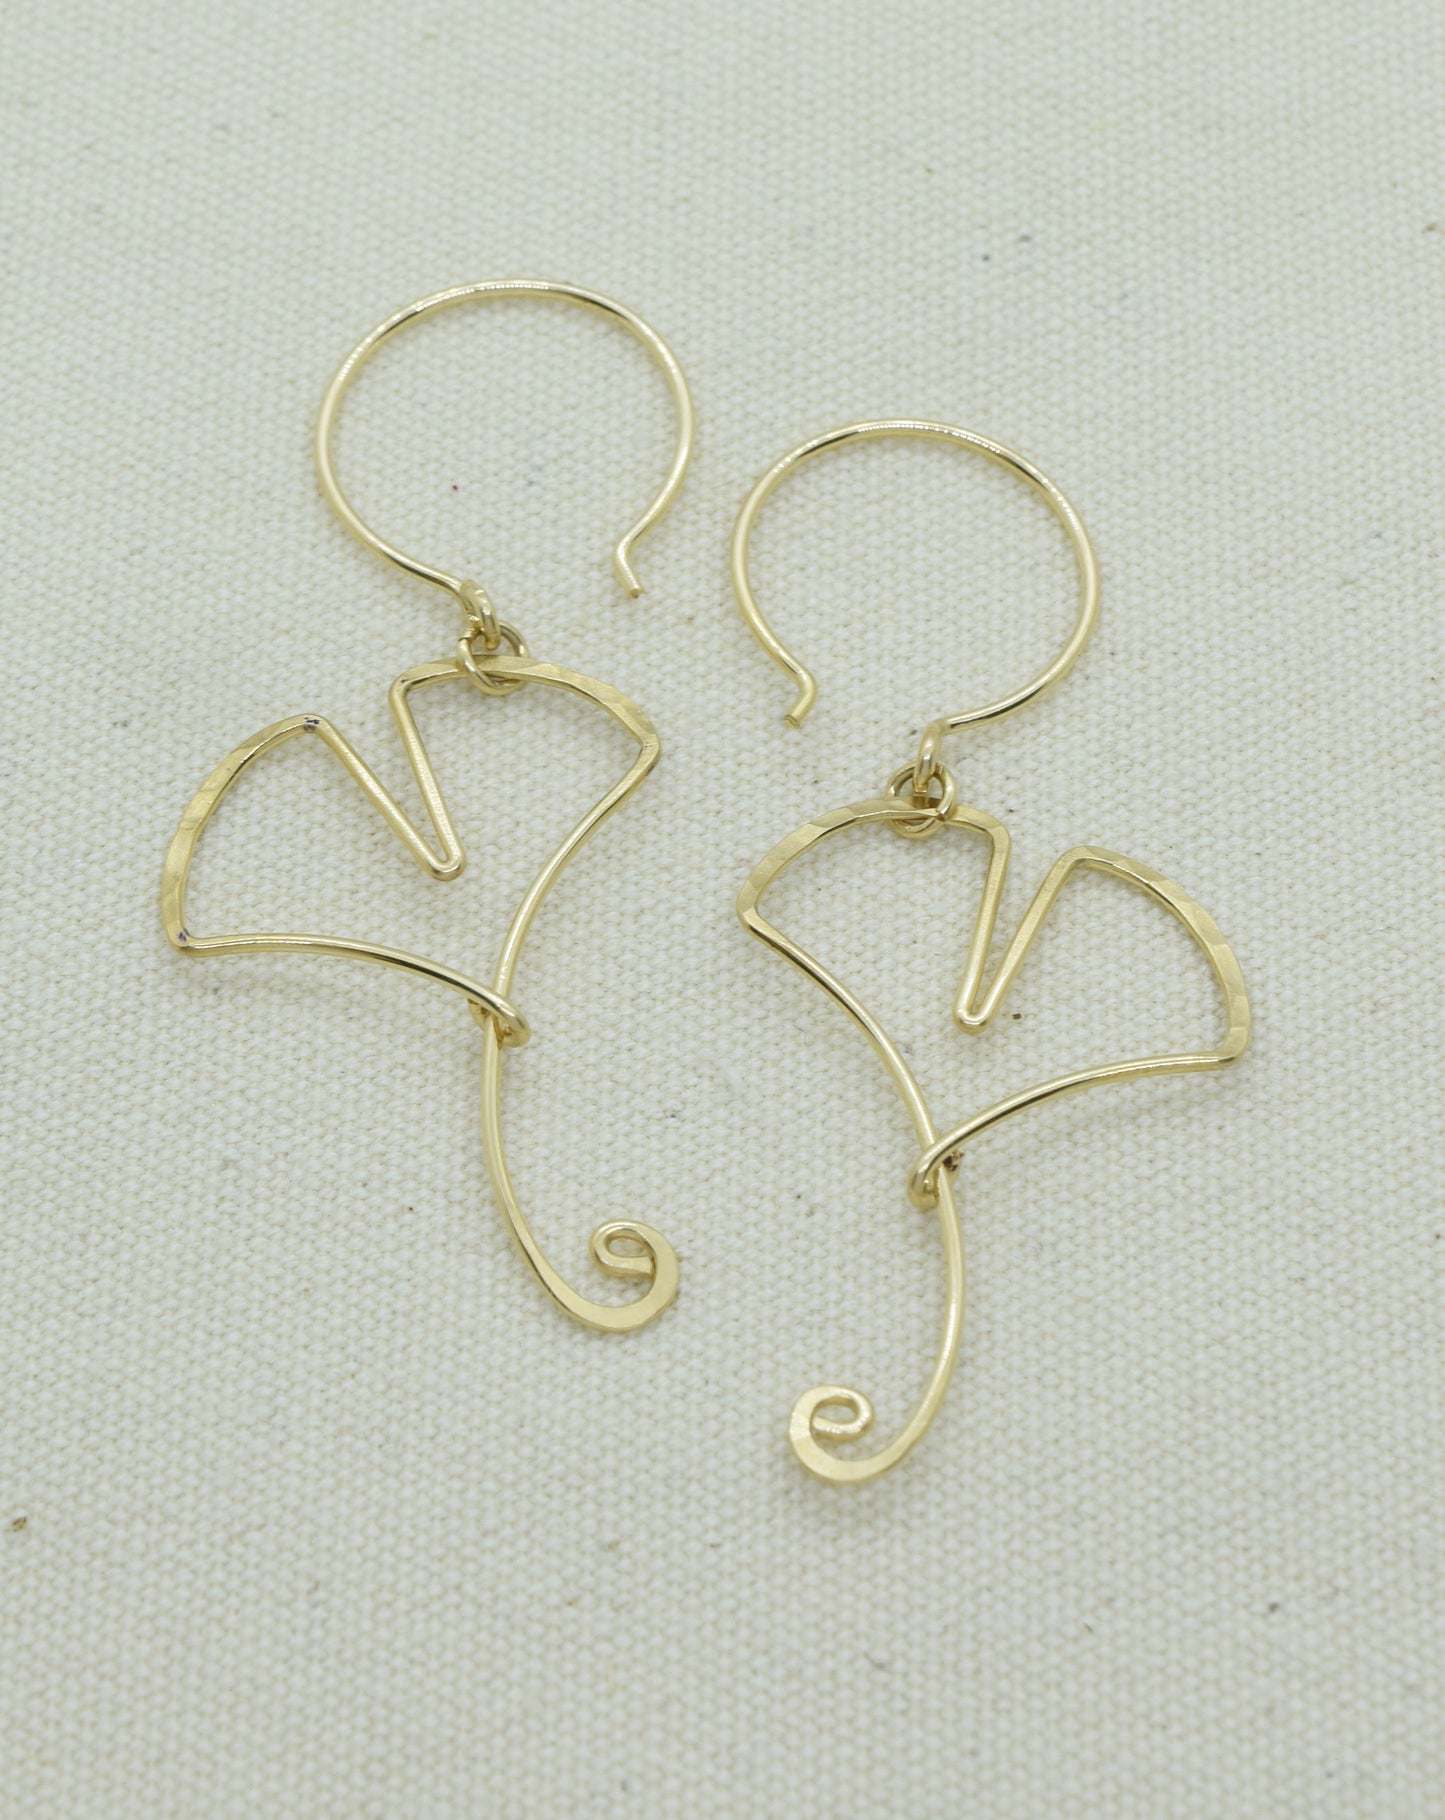 Ginkgo Leaf Gold Earrings